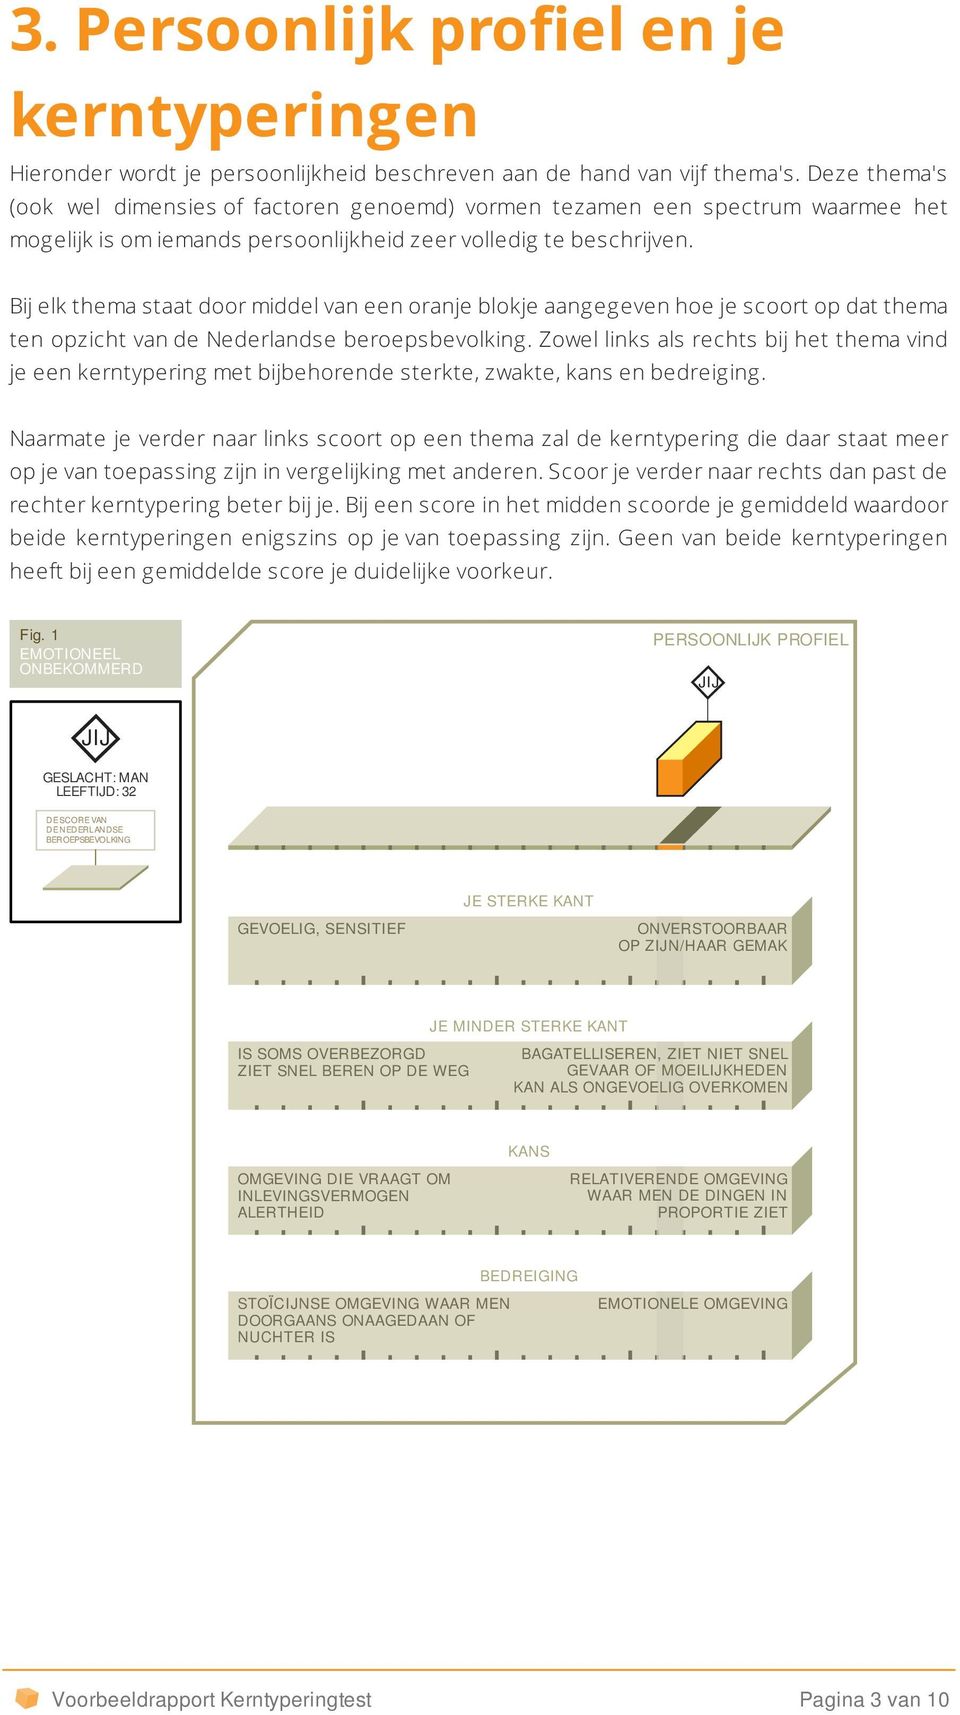 Bij elk thema staat door middel van een oranje blokje aangegeven hoe je scoort op dat thema ten opzicht van de Nederlandse beroepsbevolking.